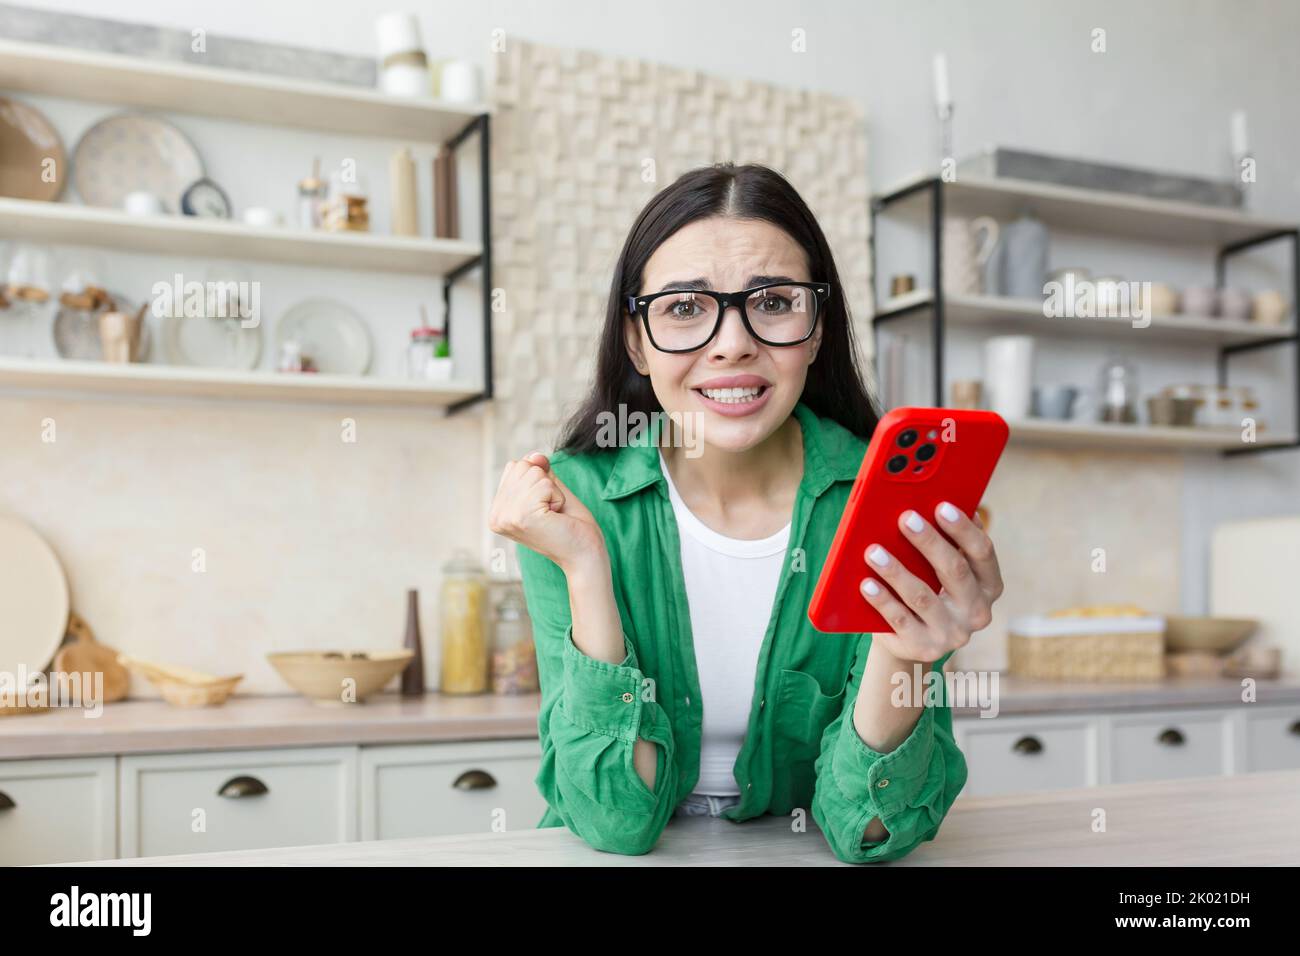 Nervöse junge Frau in einer Brille, die ein rotes Telefon hält und sich auf einen wichtigen Anruf oder eine wichtige Nachricht freut. Zu Hause in der Küche, auf die Kamera schauend, besorgt. Stockfoto